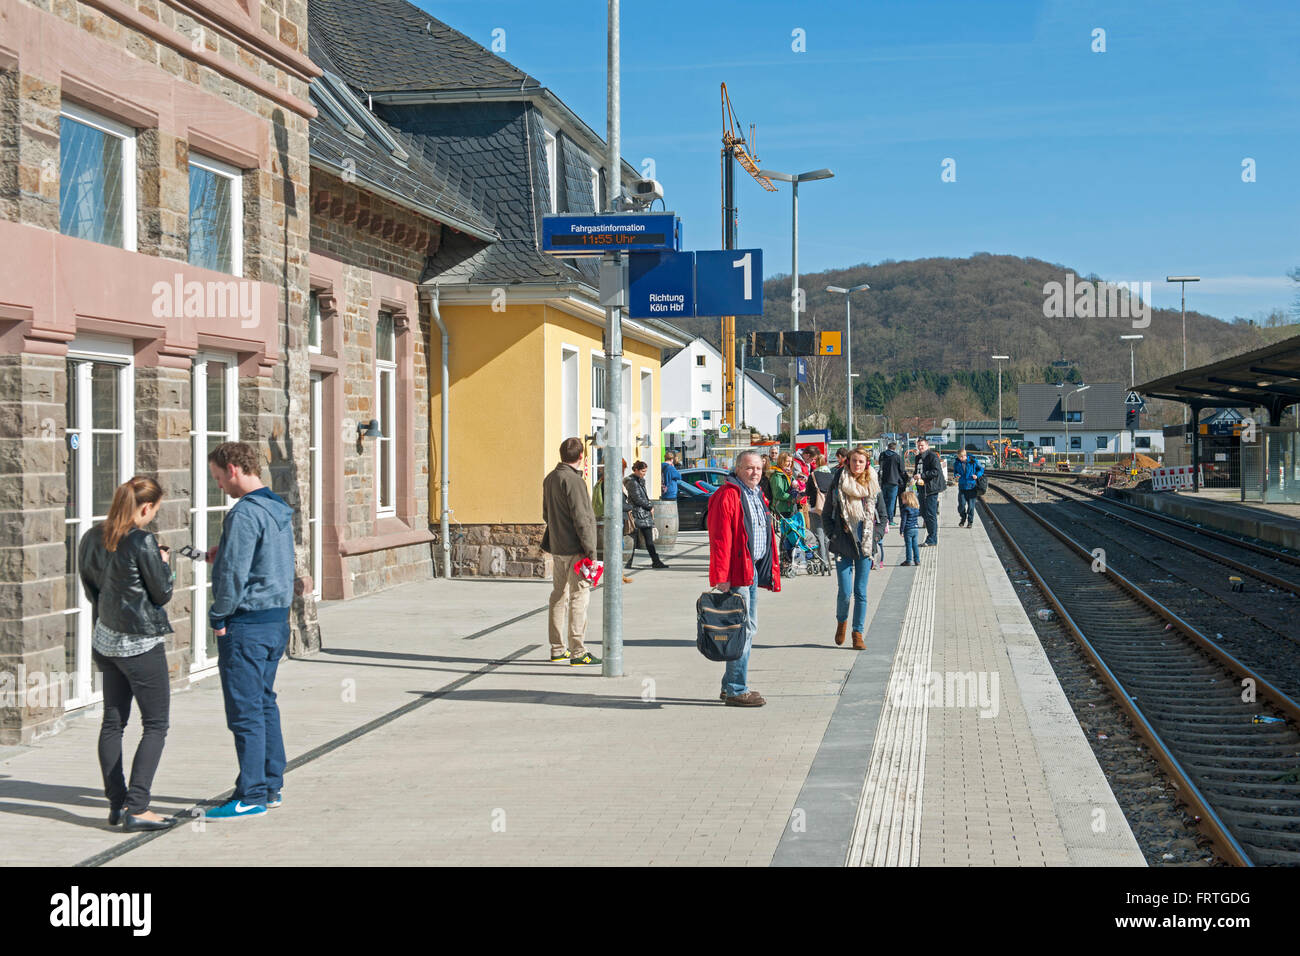 Deutschland, Rheinisch Bergischer Kreis, Overrath, Bahnhof Stock Photo